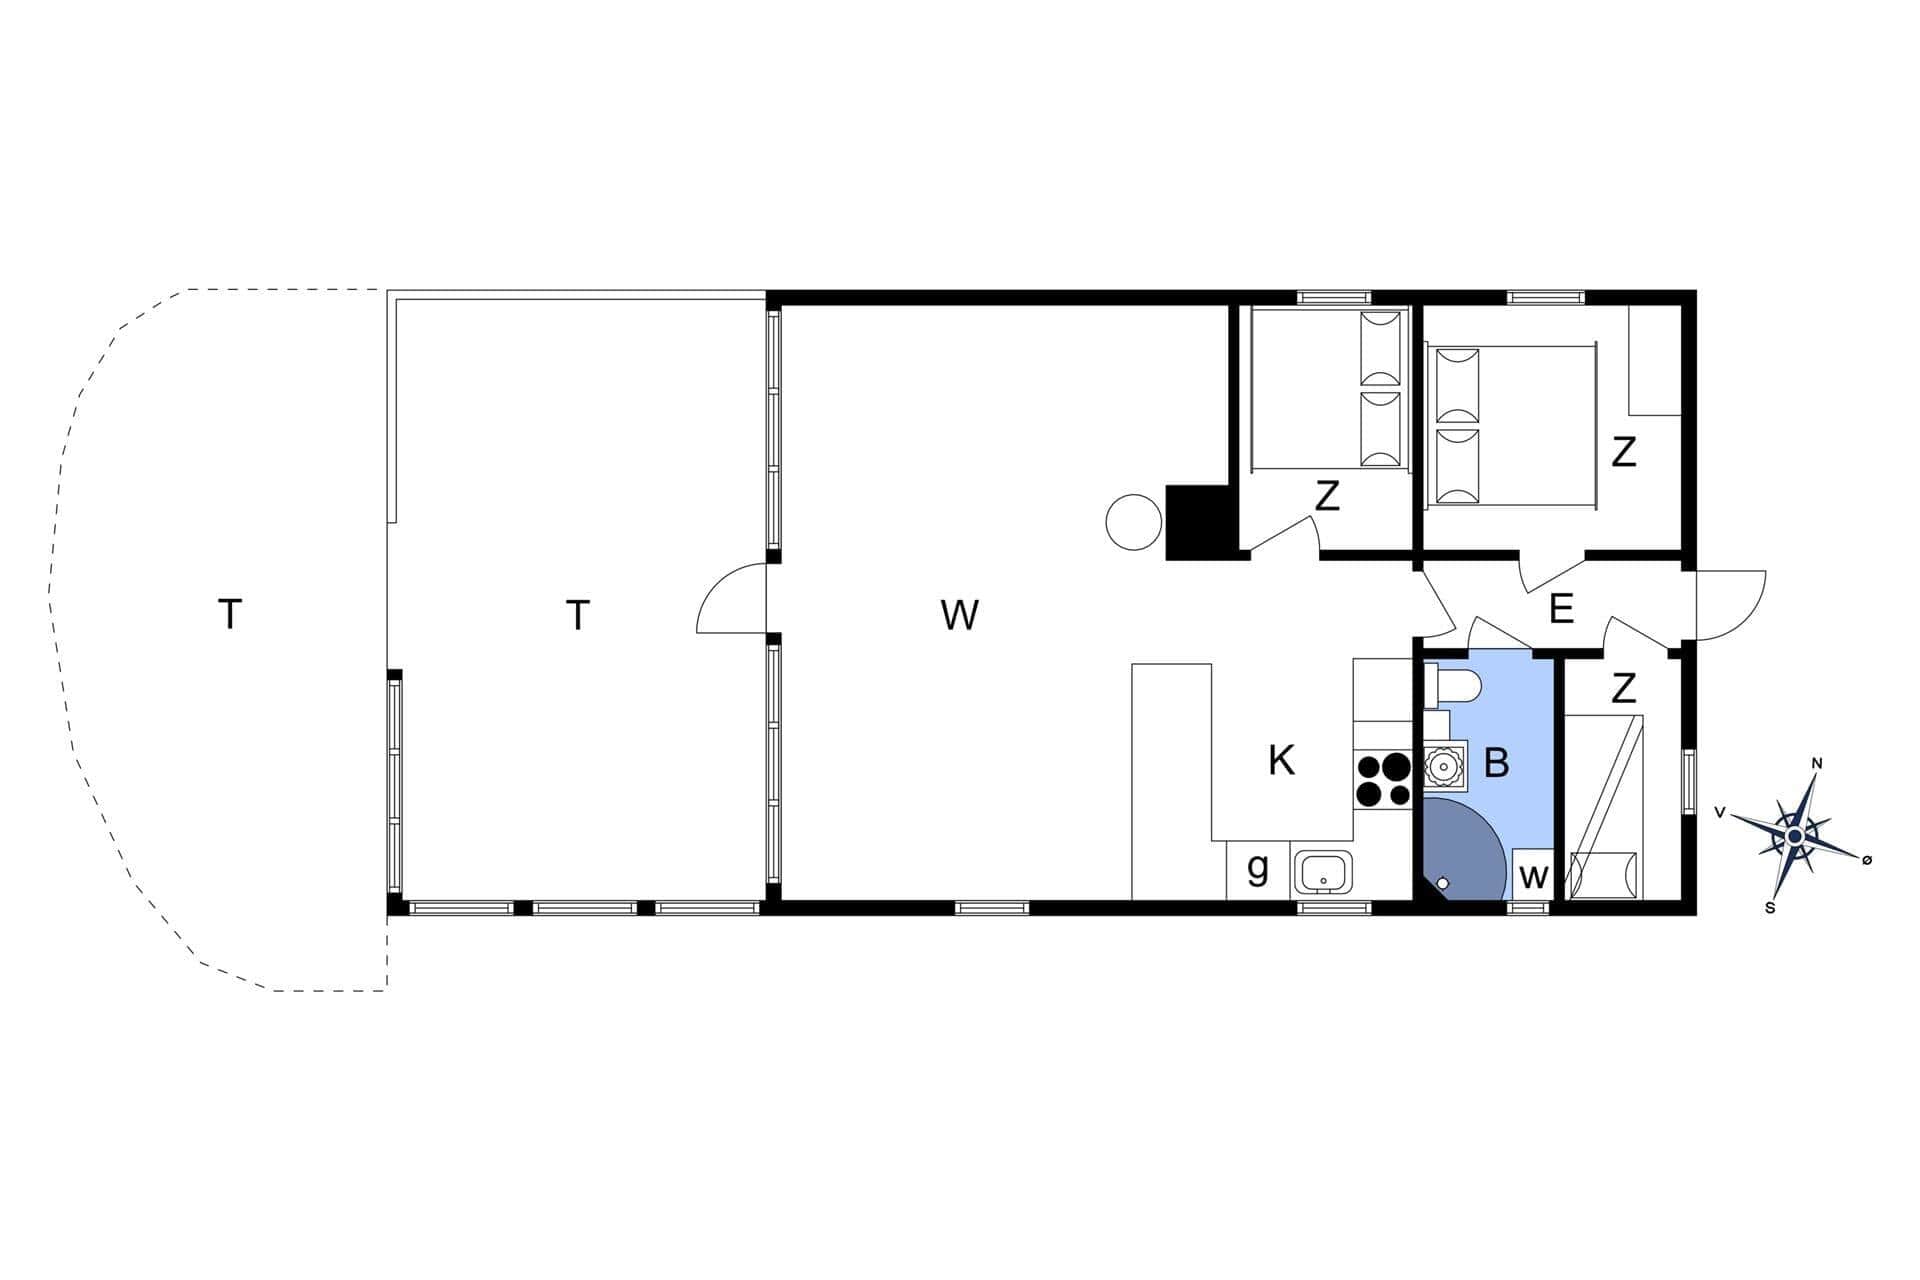 Interior 6-3 Holiday-home M64220, Siriusvej 6, DK - 5500 Middelfart